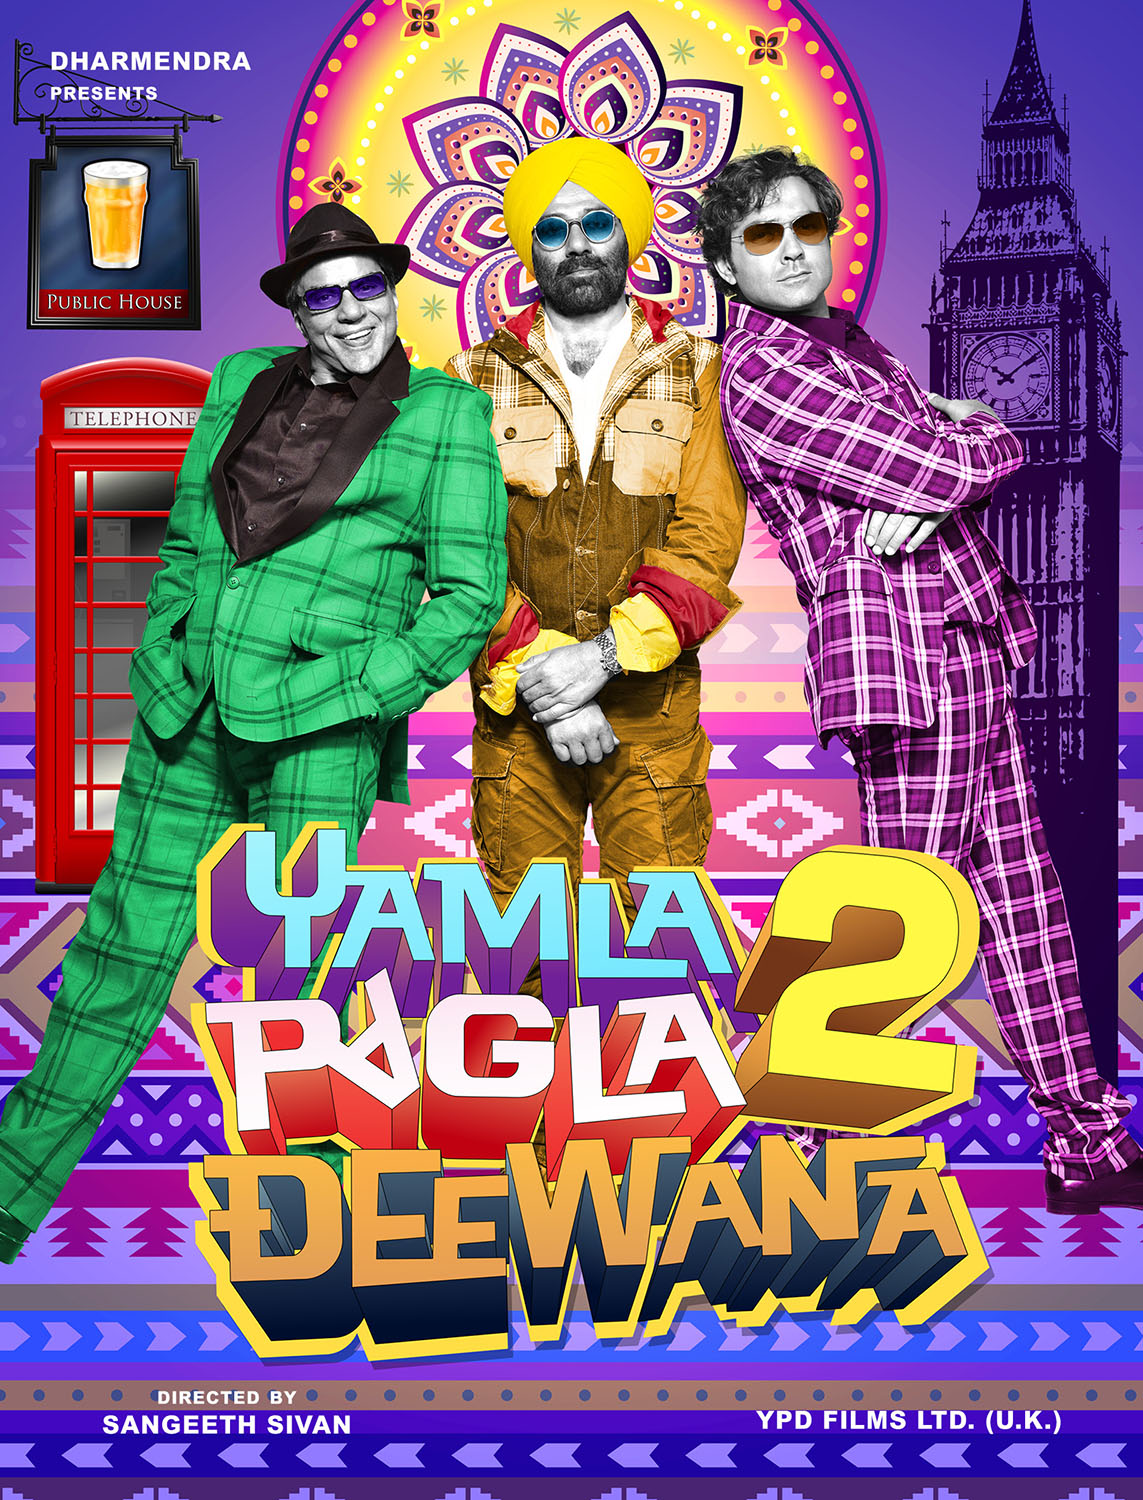 Yamla pagla deewana poster 2